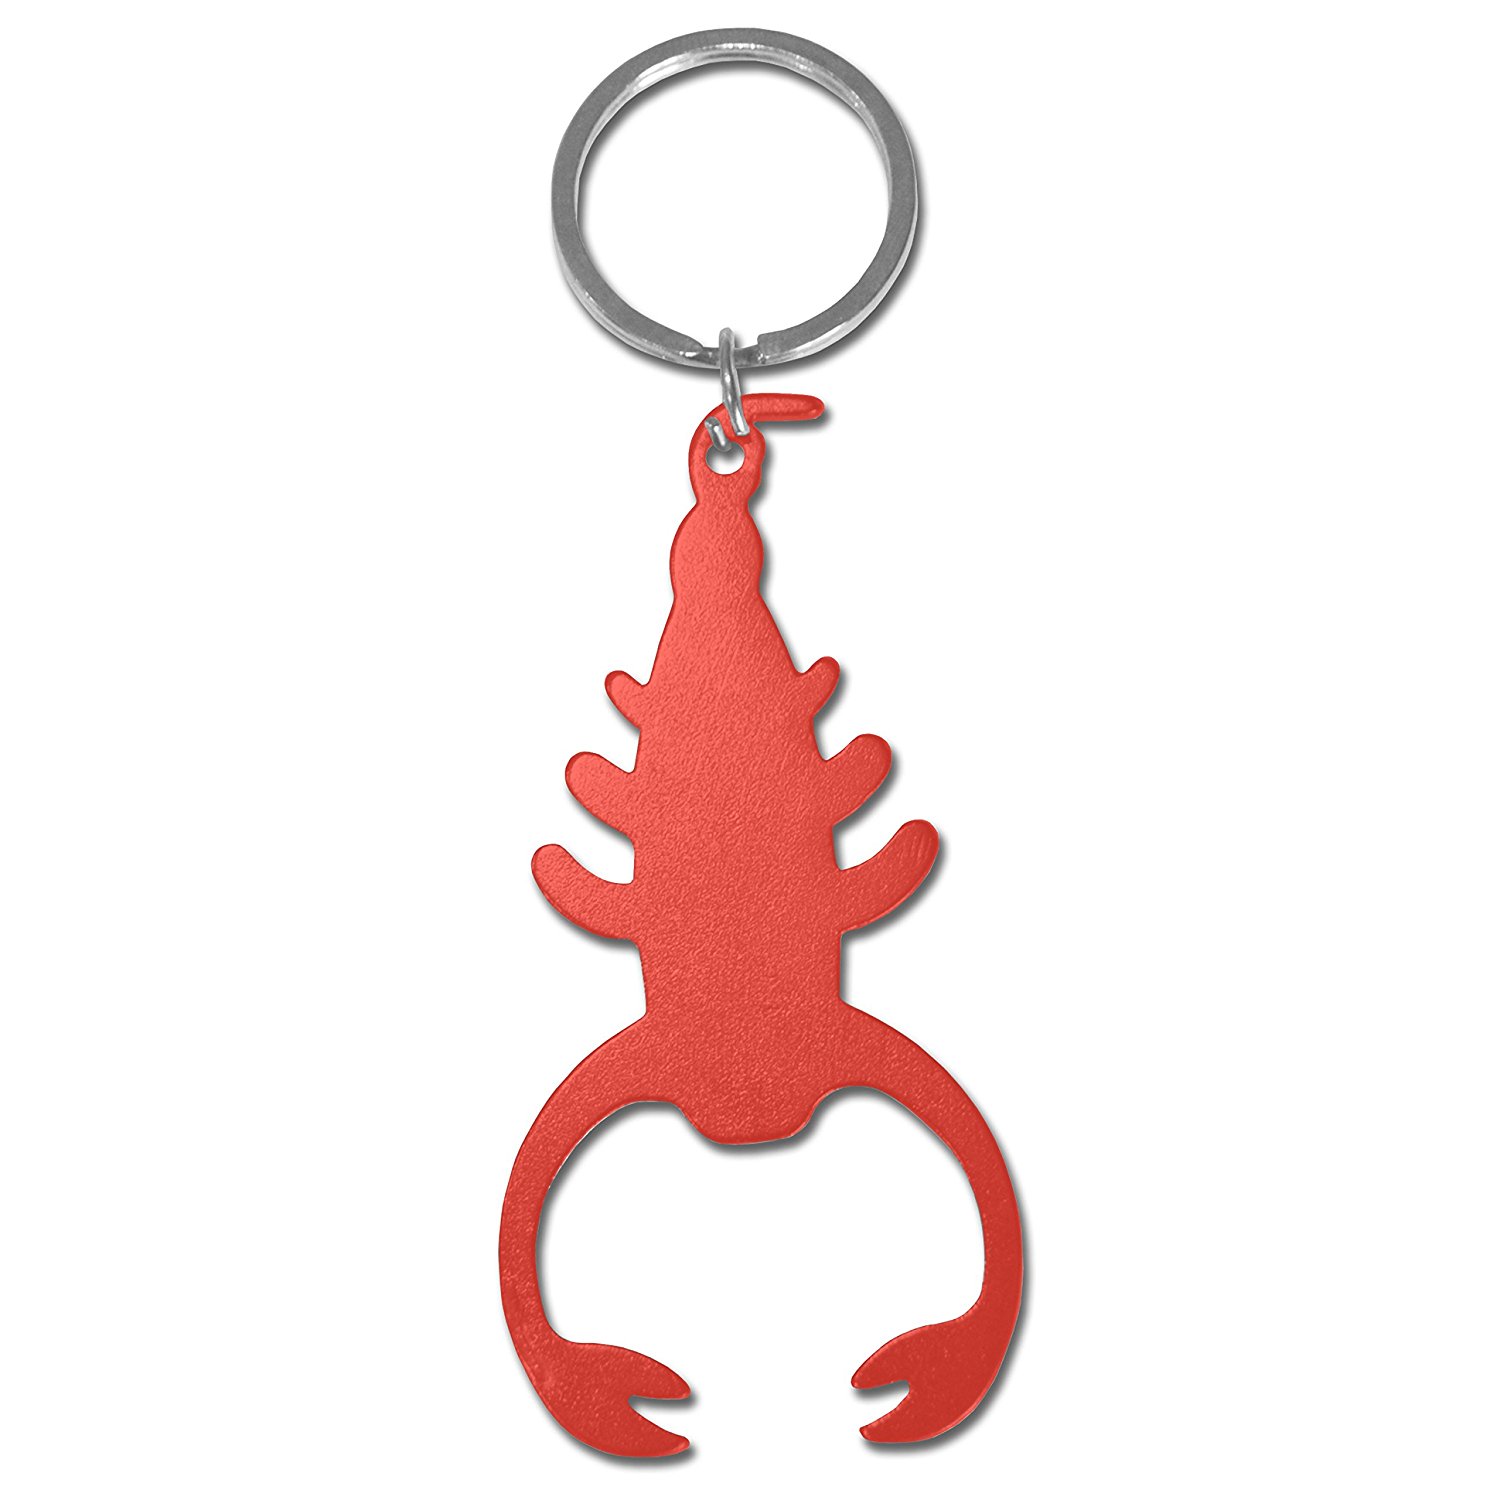 Amazon.com: Scorpion Keyring /Novelty Keychain / Bottle Opener- RED ...